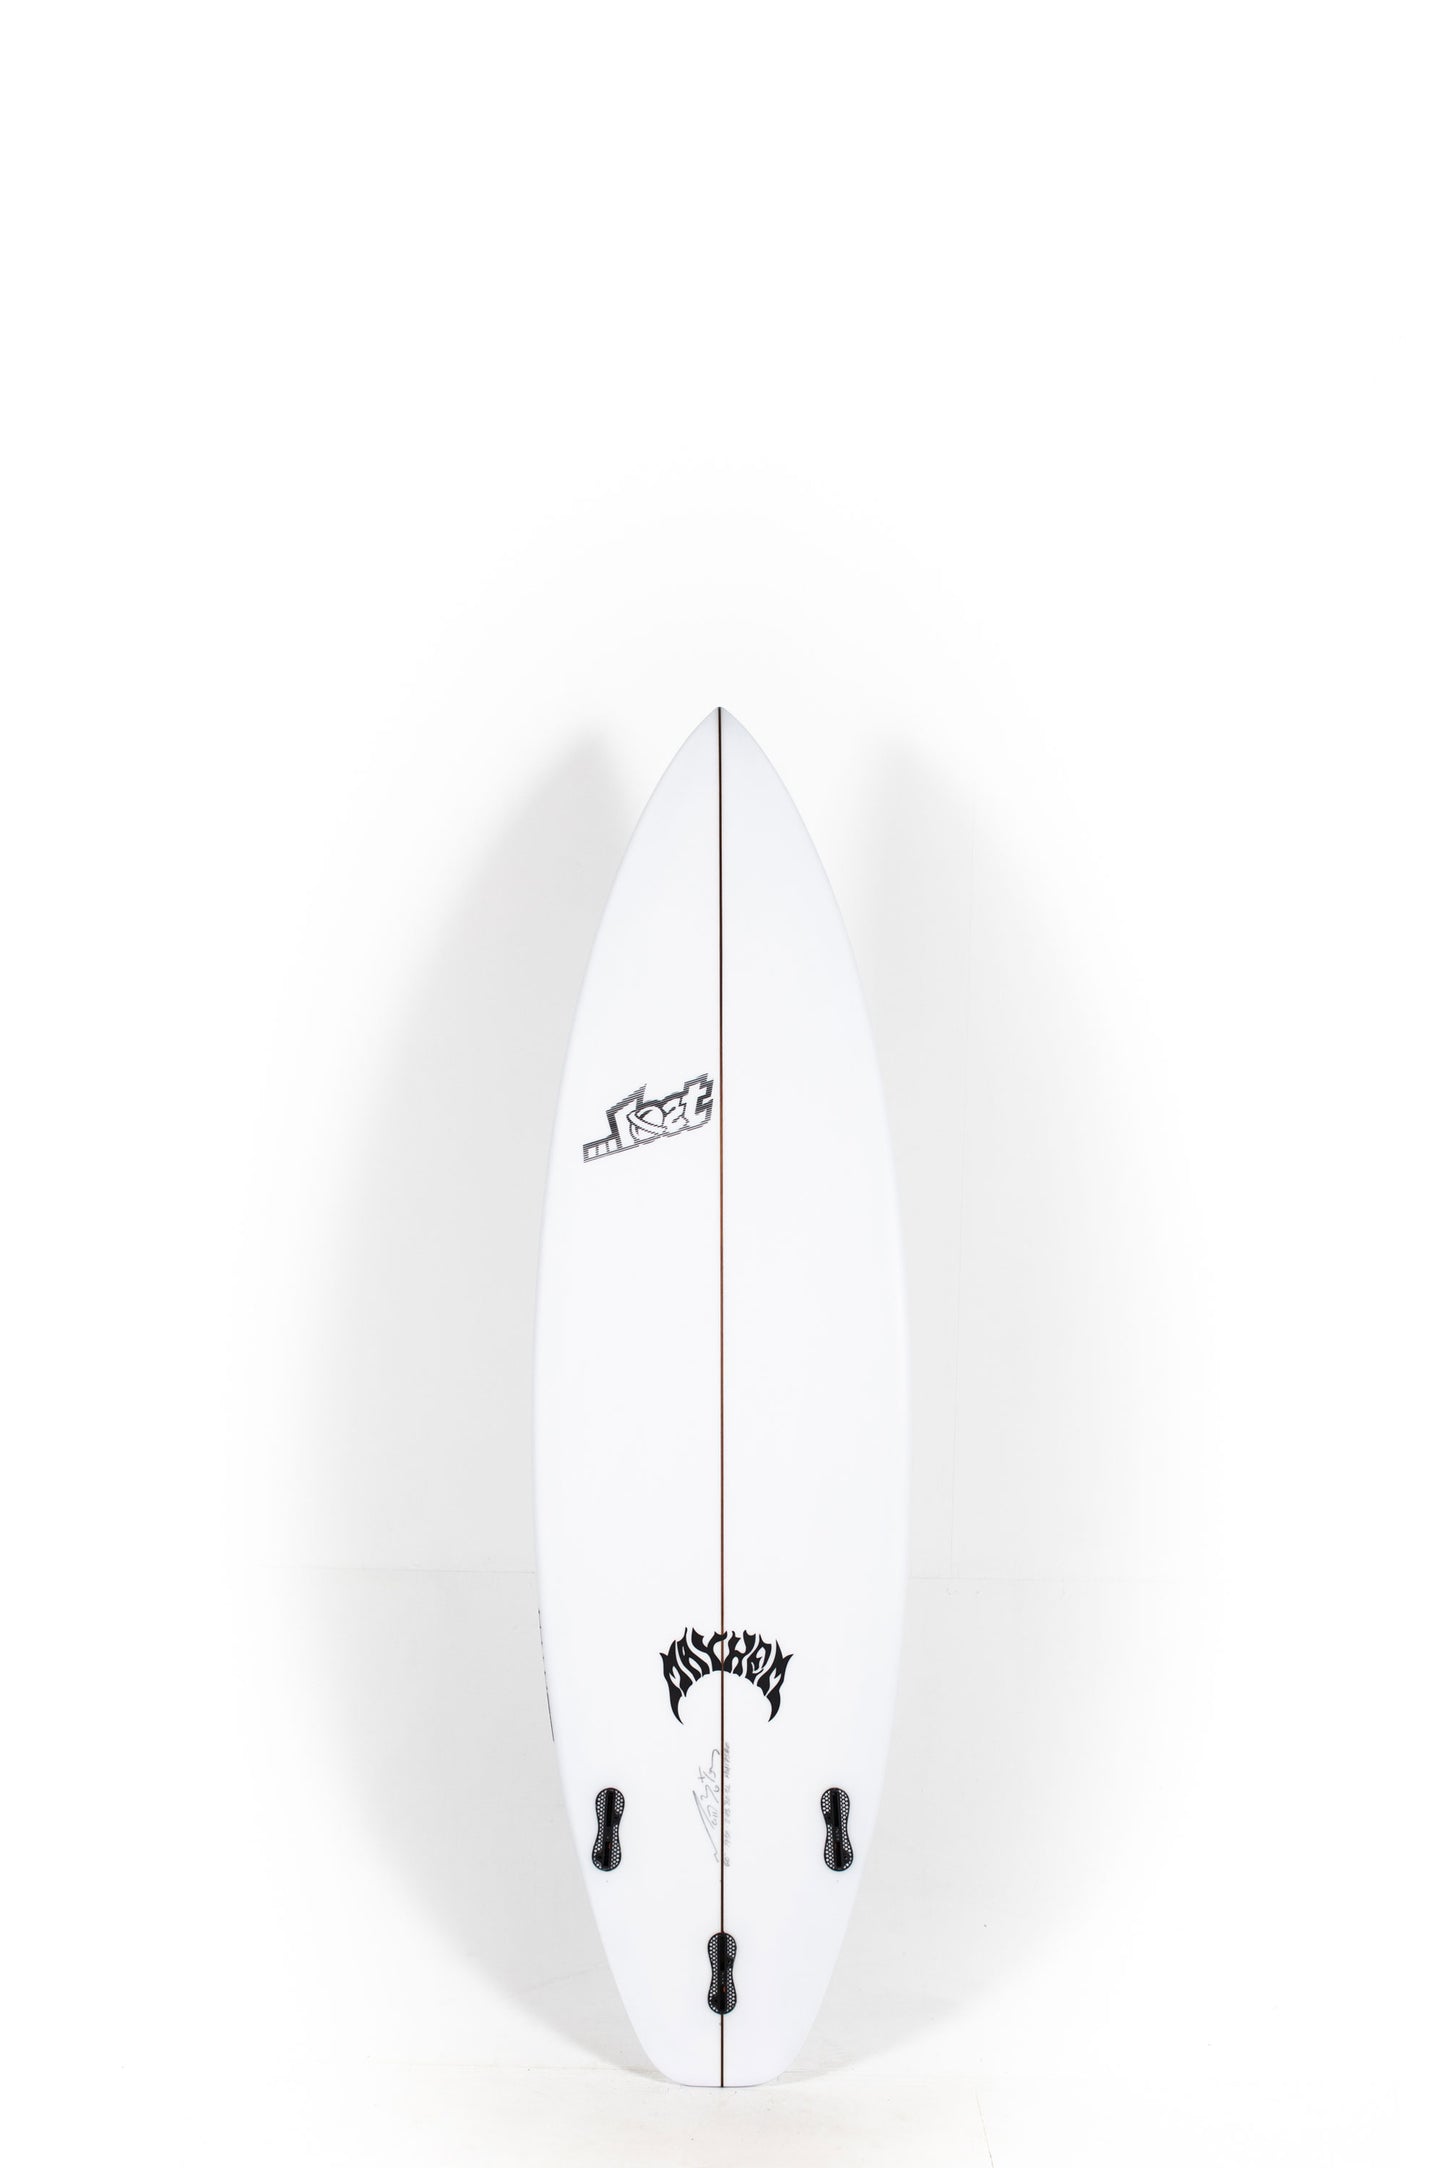 Pukas Surf Shop - Lost Surfboard - 3.0_STUB DRIVER by Matt Biolos - 6’0” x 19.5" x 2.45" - 30.5L - MH17580